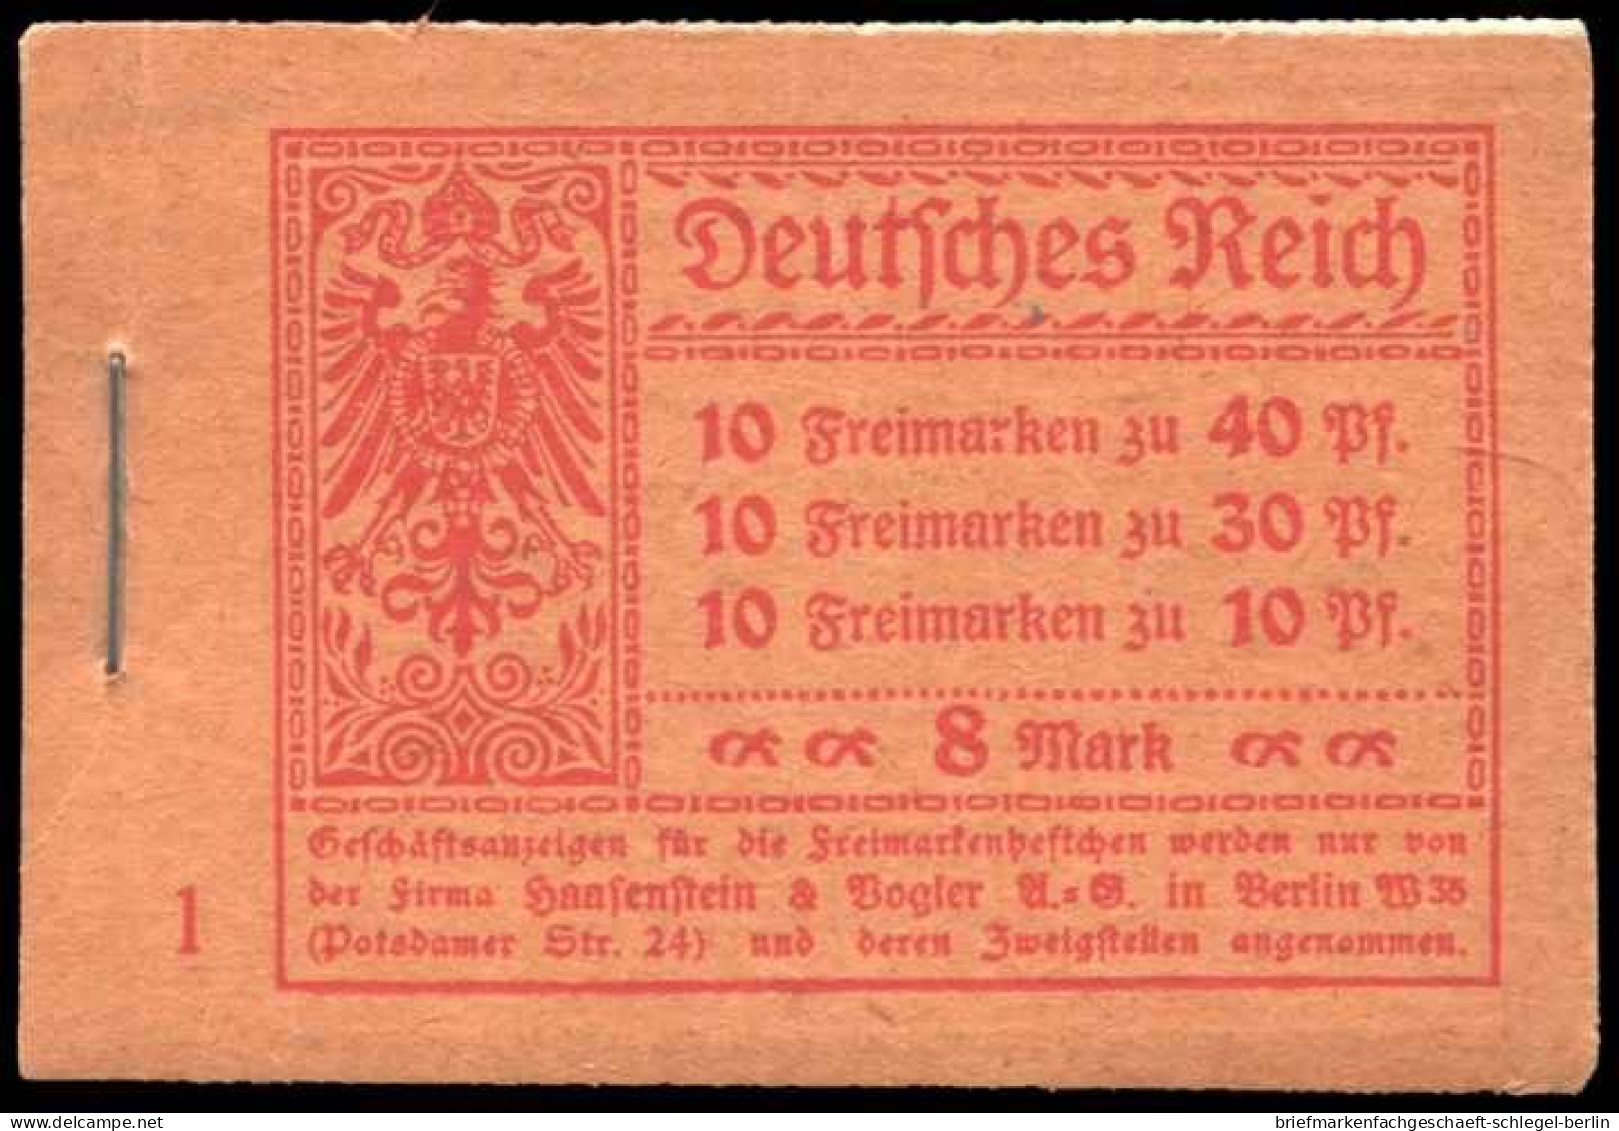 Deutsches Reich, 1921, MH 14.1 A, Postfrisch - Carnets